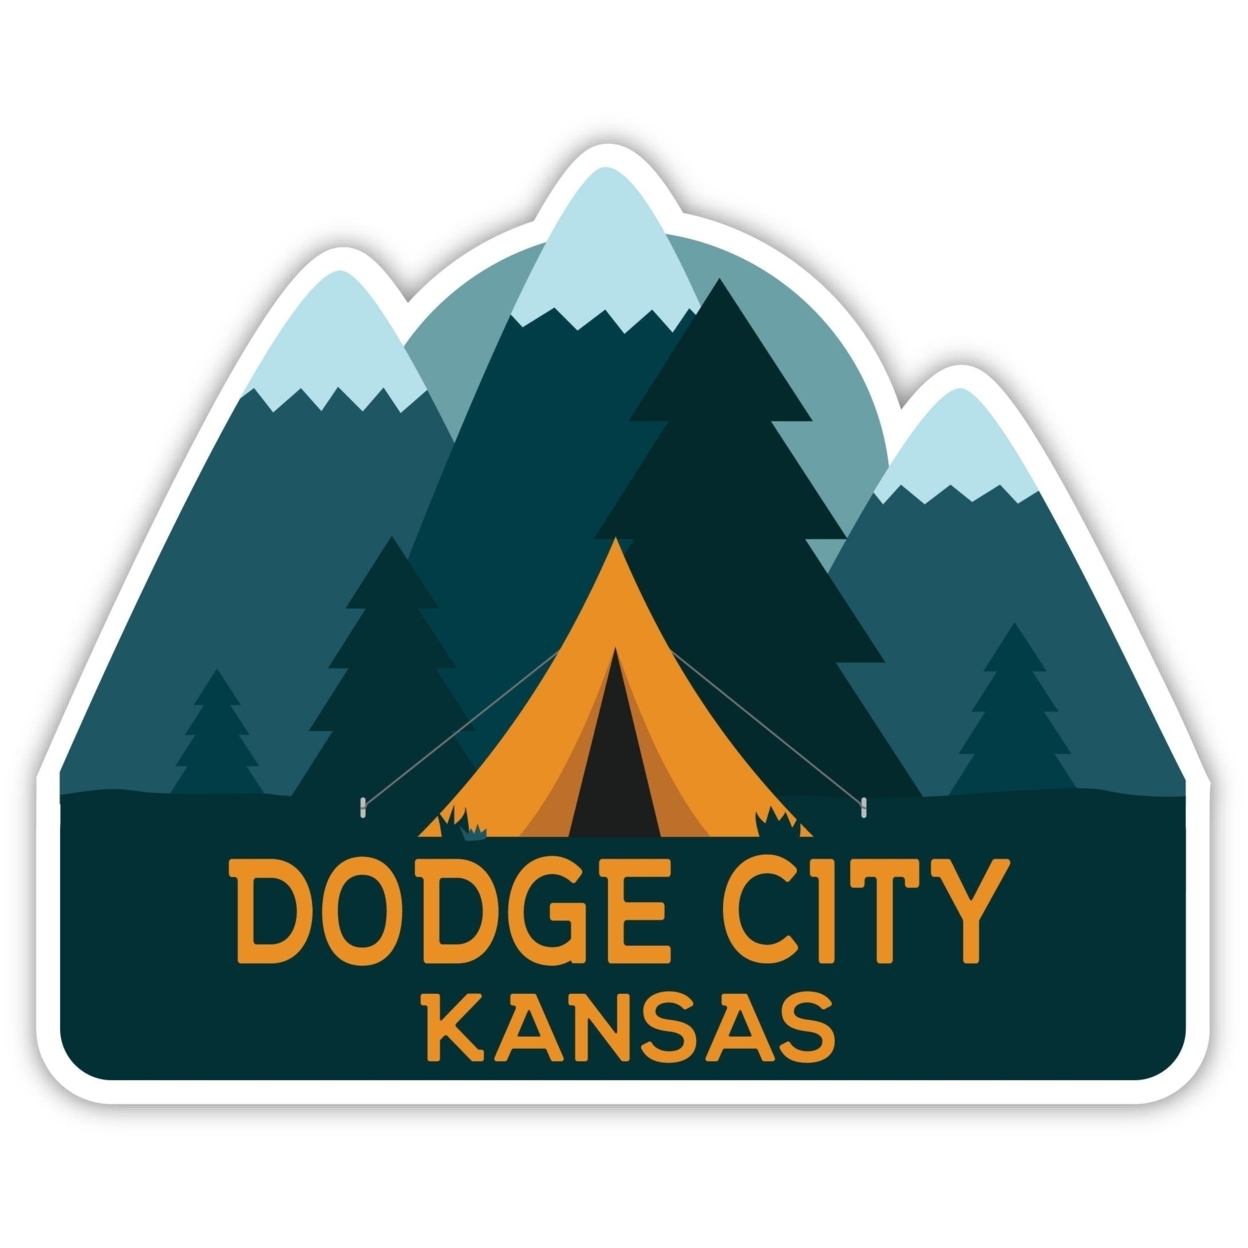 Dodge City Kansas Souvenir Decorative Stickers (Choose Theme And Size) - Single Unit, 2-Inch, Tent